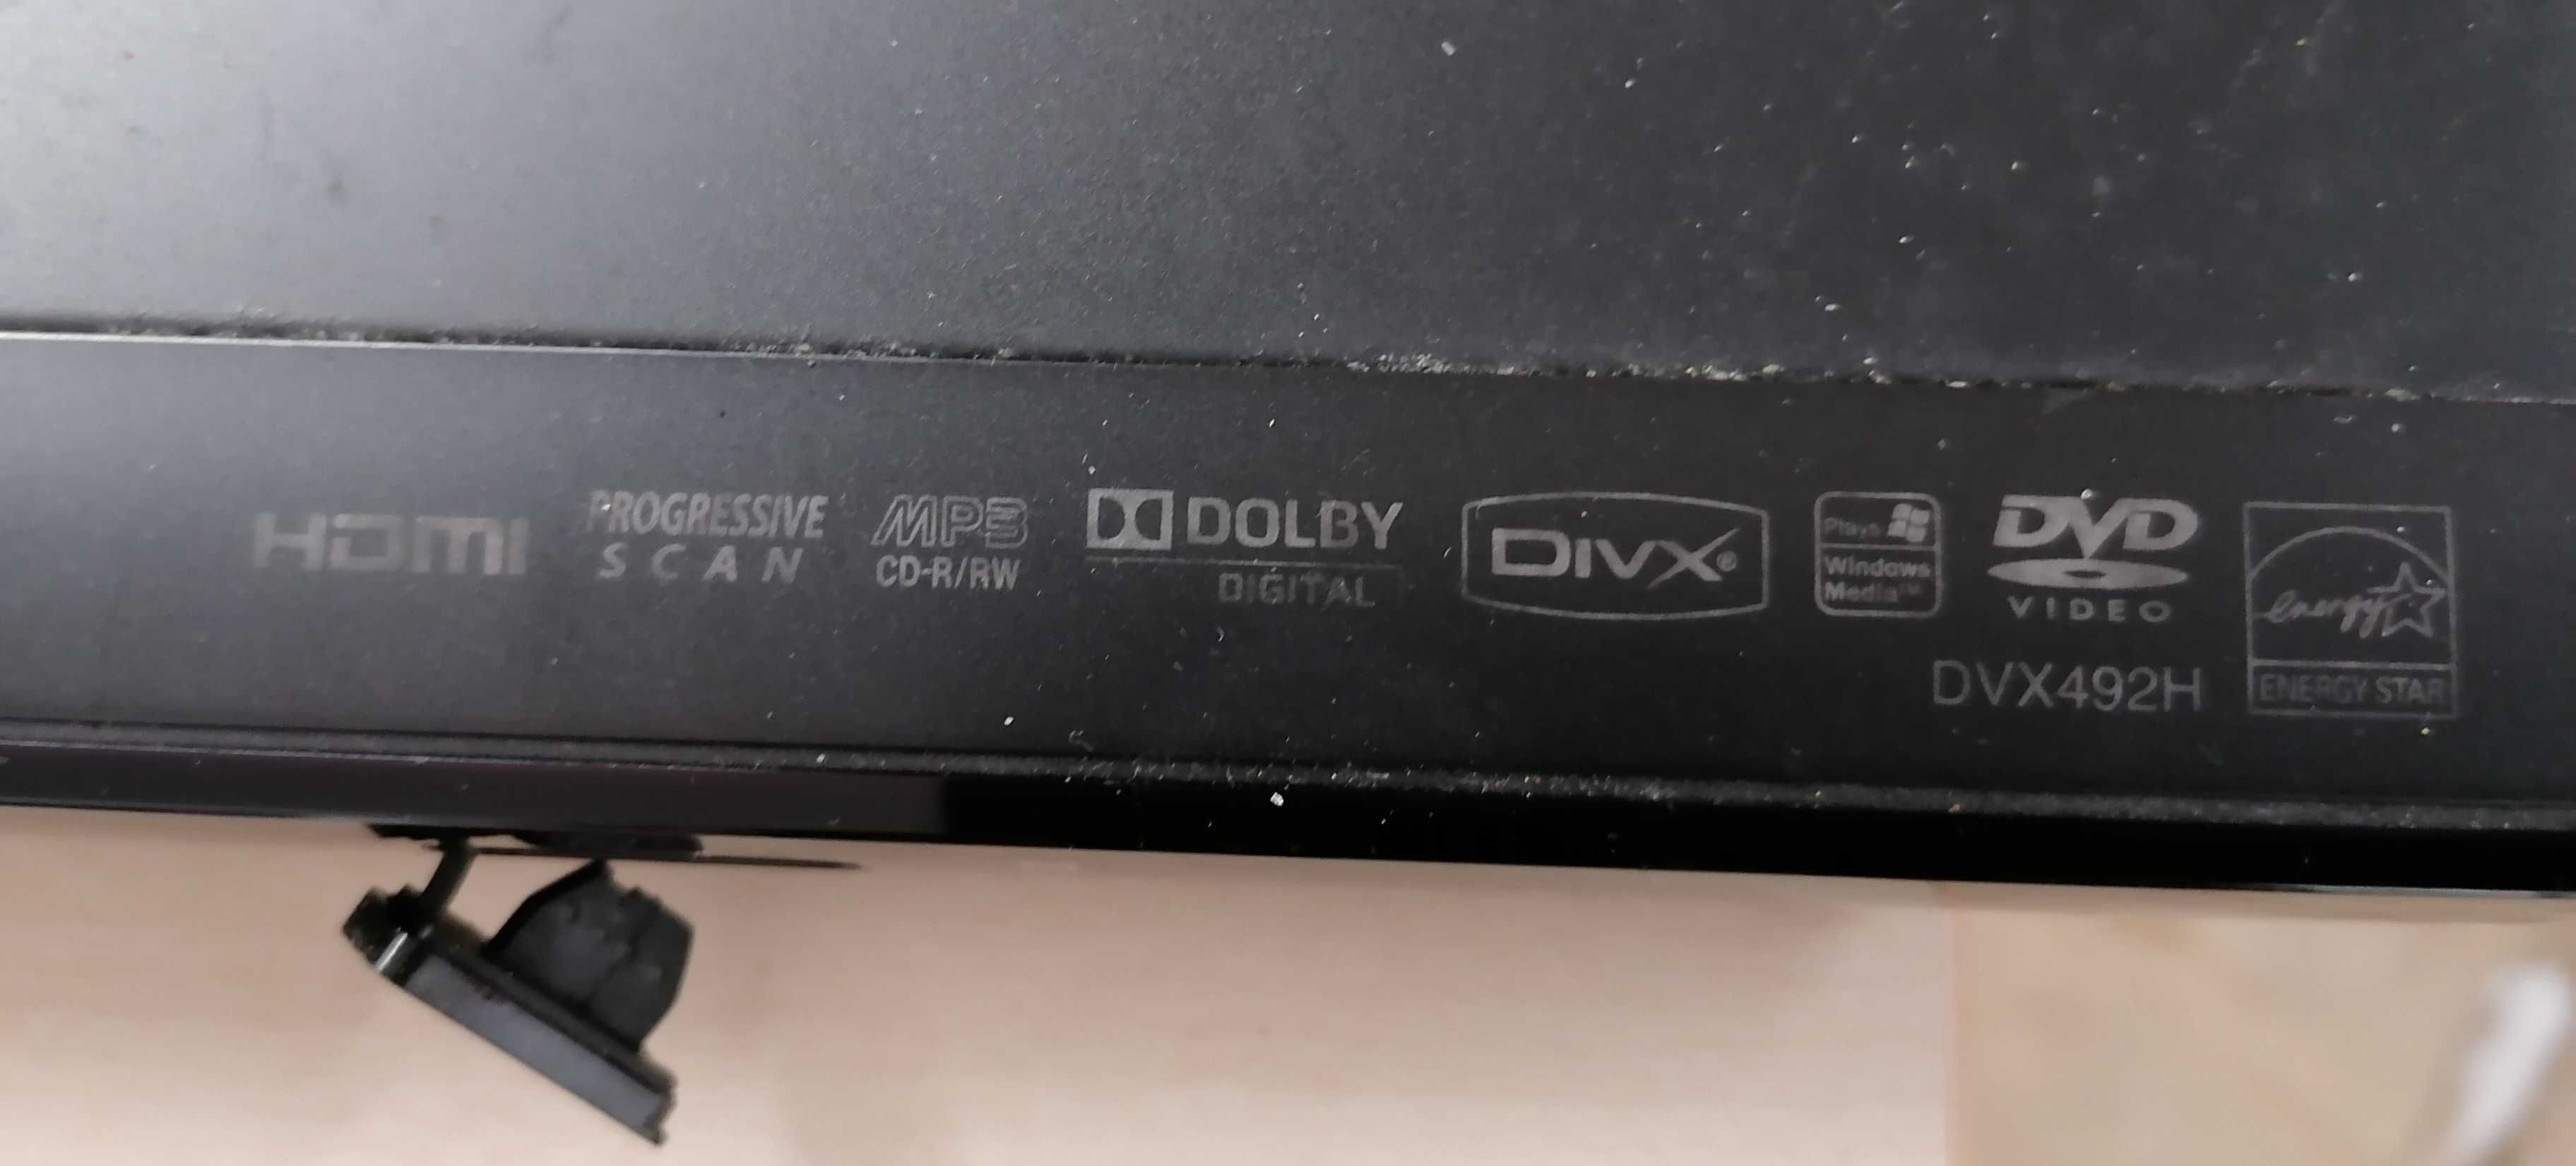 Leitor DVD/Cds, marca LG, model DVX492H, semi novo, por 15€